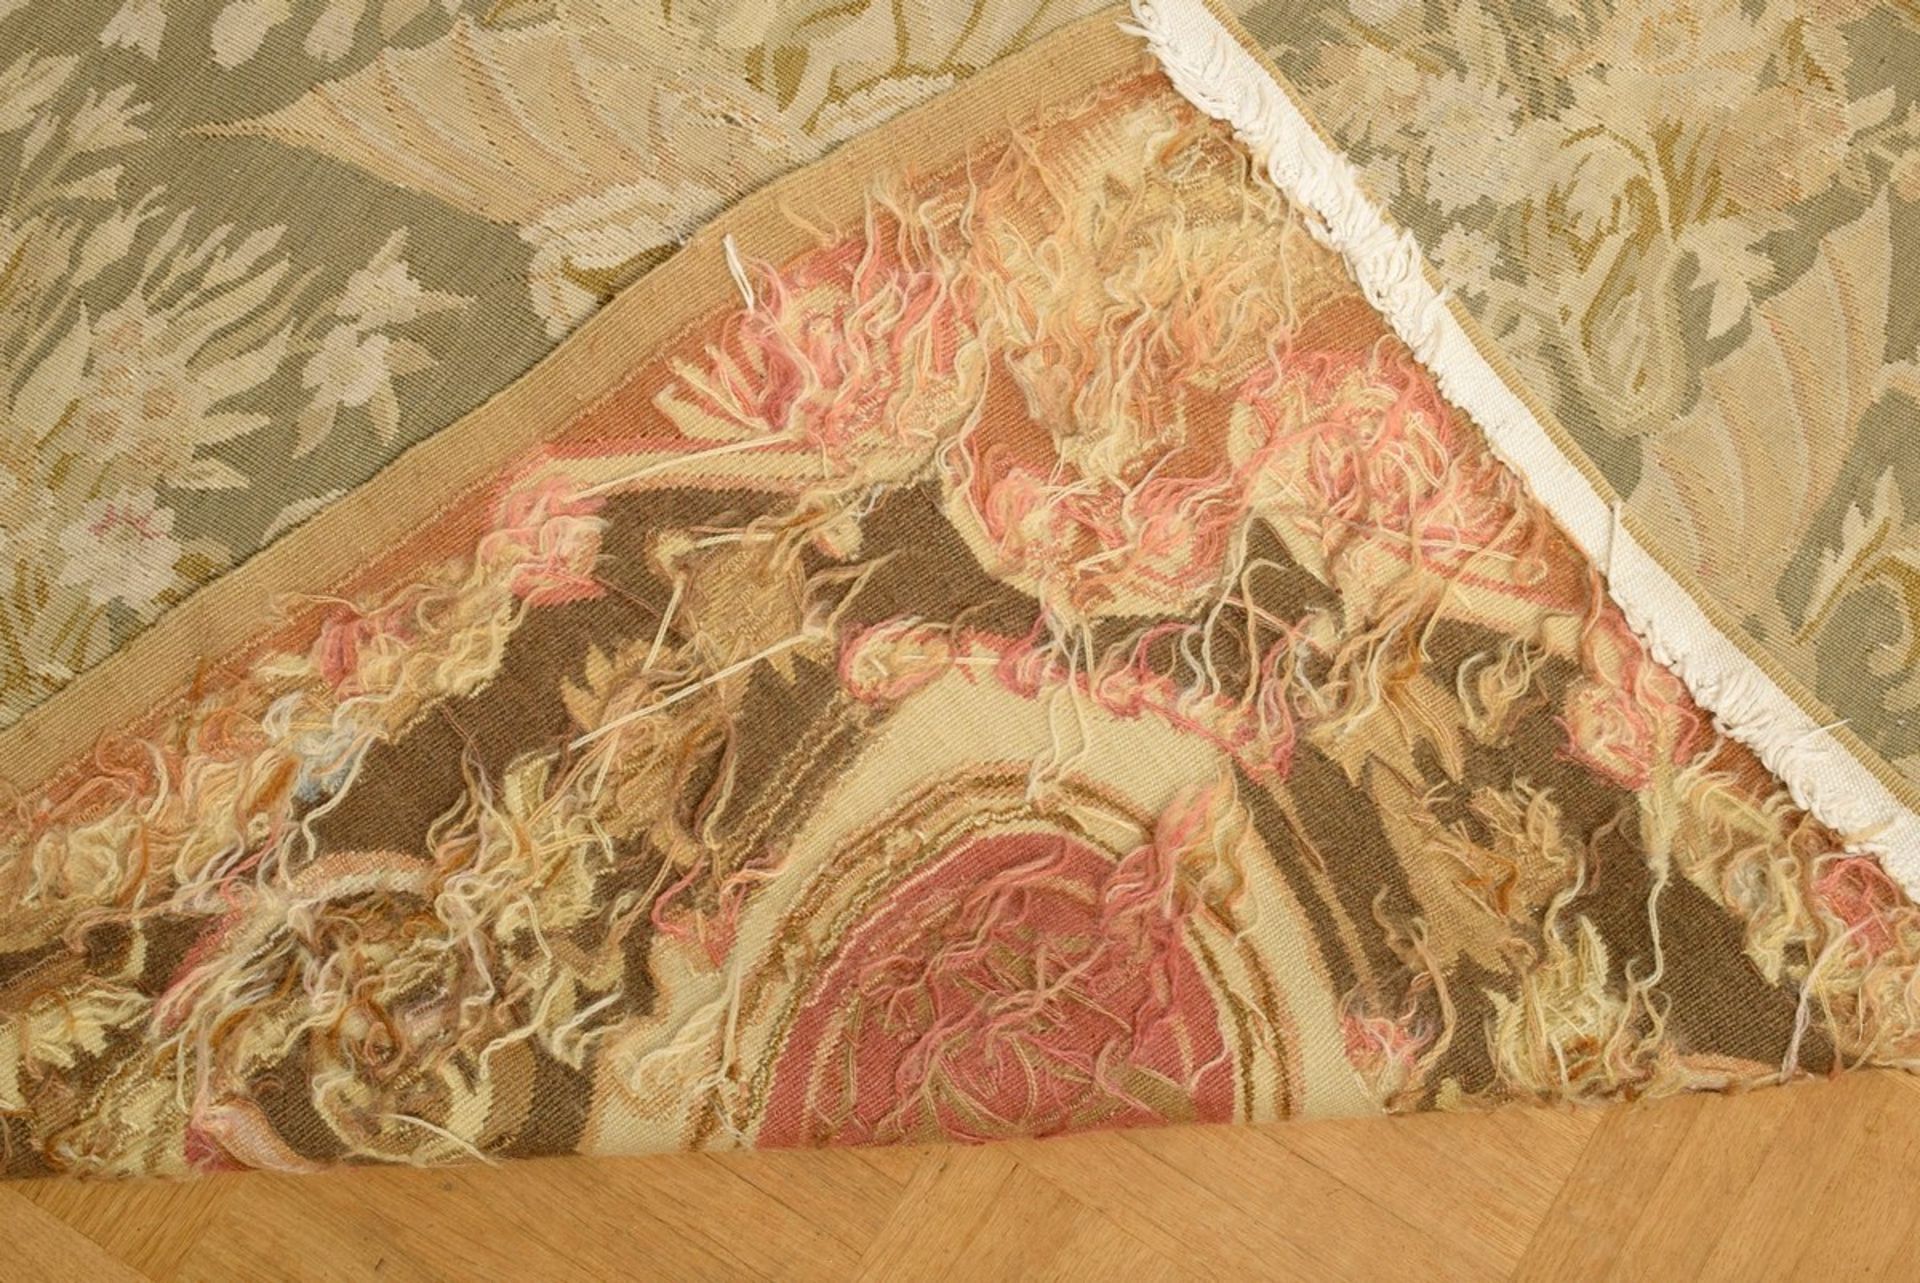 Großer Aubusson Teppich in Grün- und Beigetönen nach altem Vorbild, 20.Jh., 280x310cm - Bild 5 aus 9